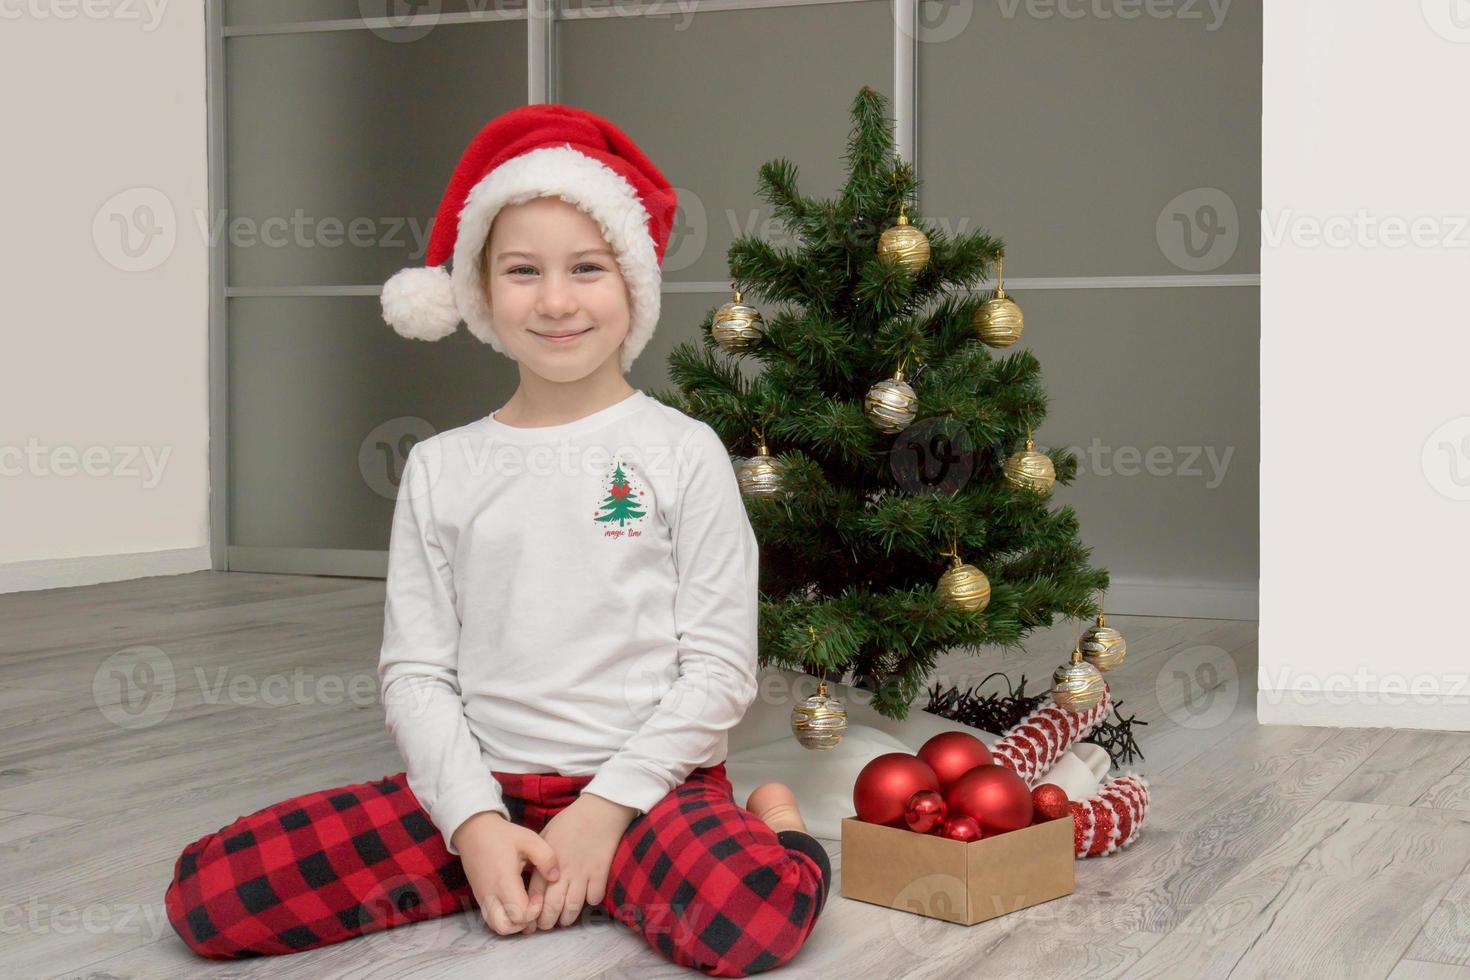 flicka i pläd pyjamas och en santa hatt sitter Nästa till de jul träd och ler, jul foto